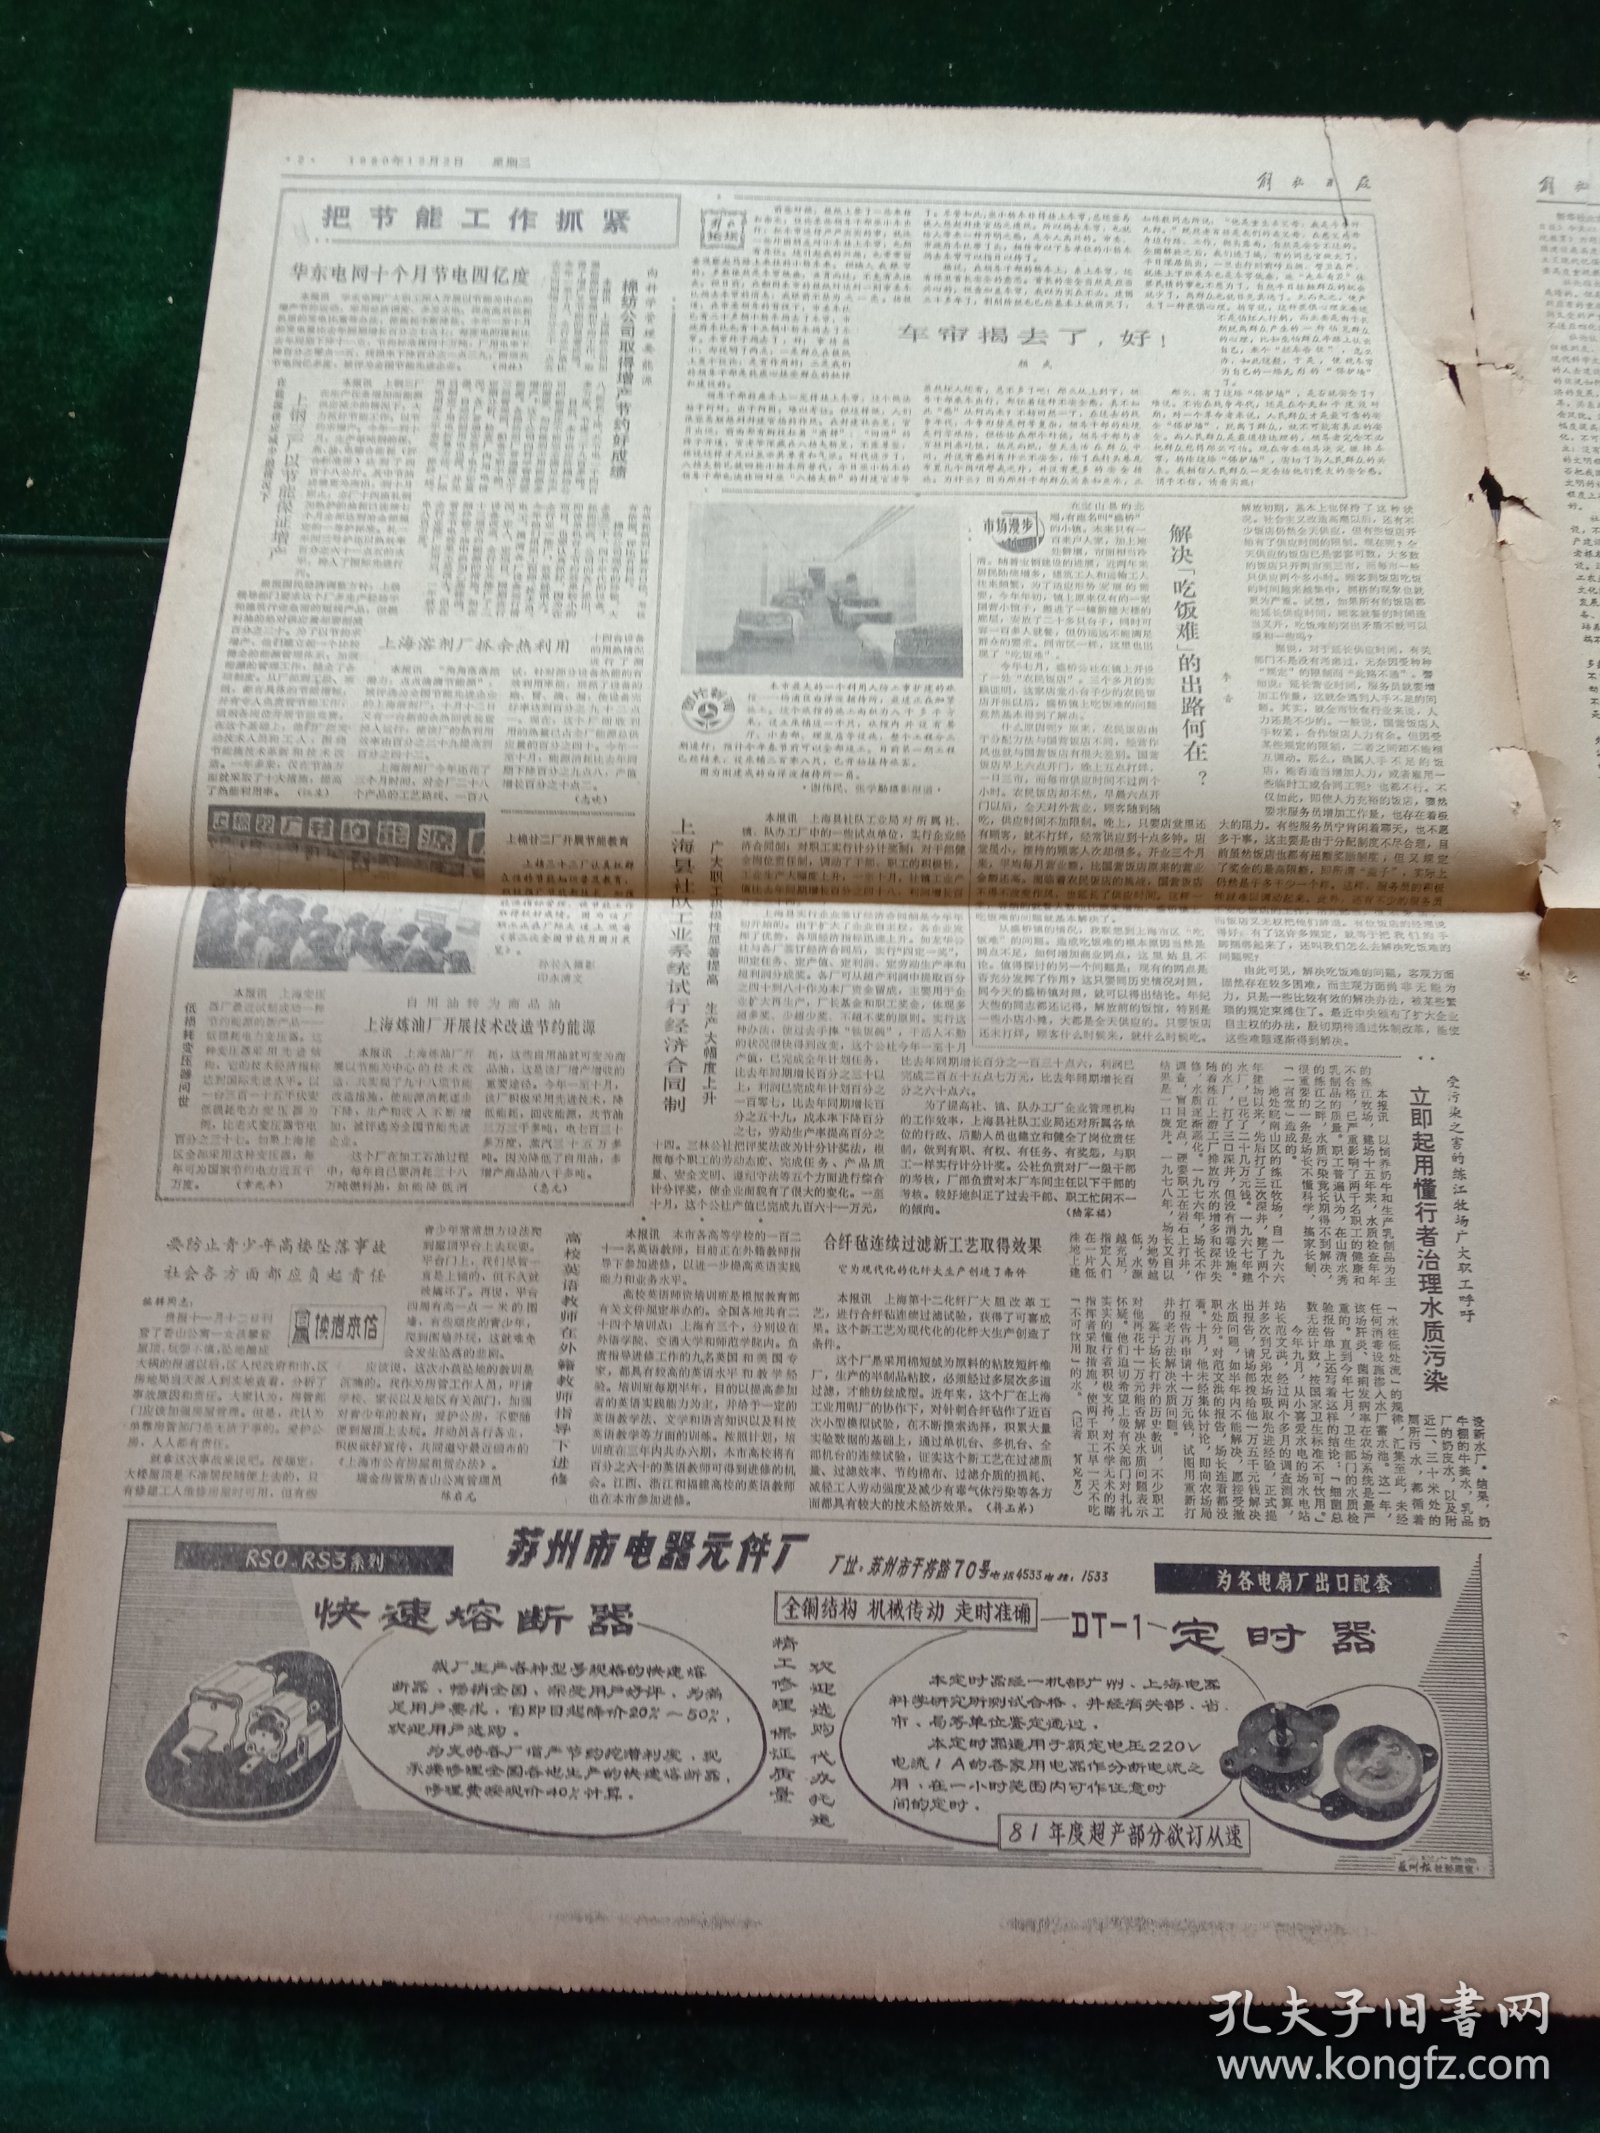 解放日报，1980年12月2日审判四人帮，其它详情见图，对开四版。